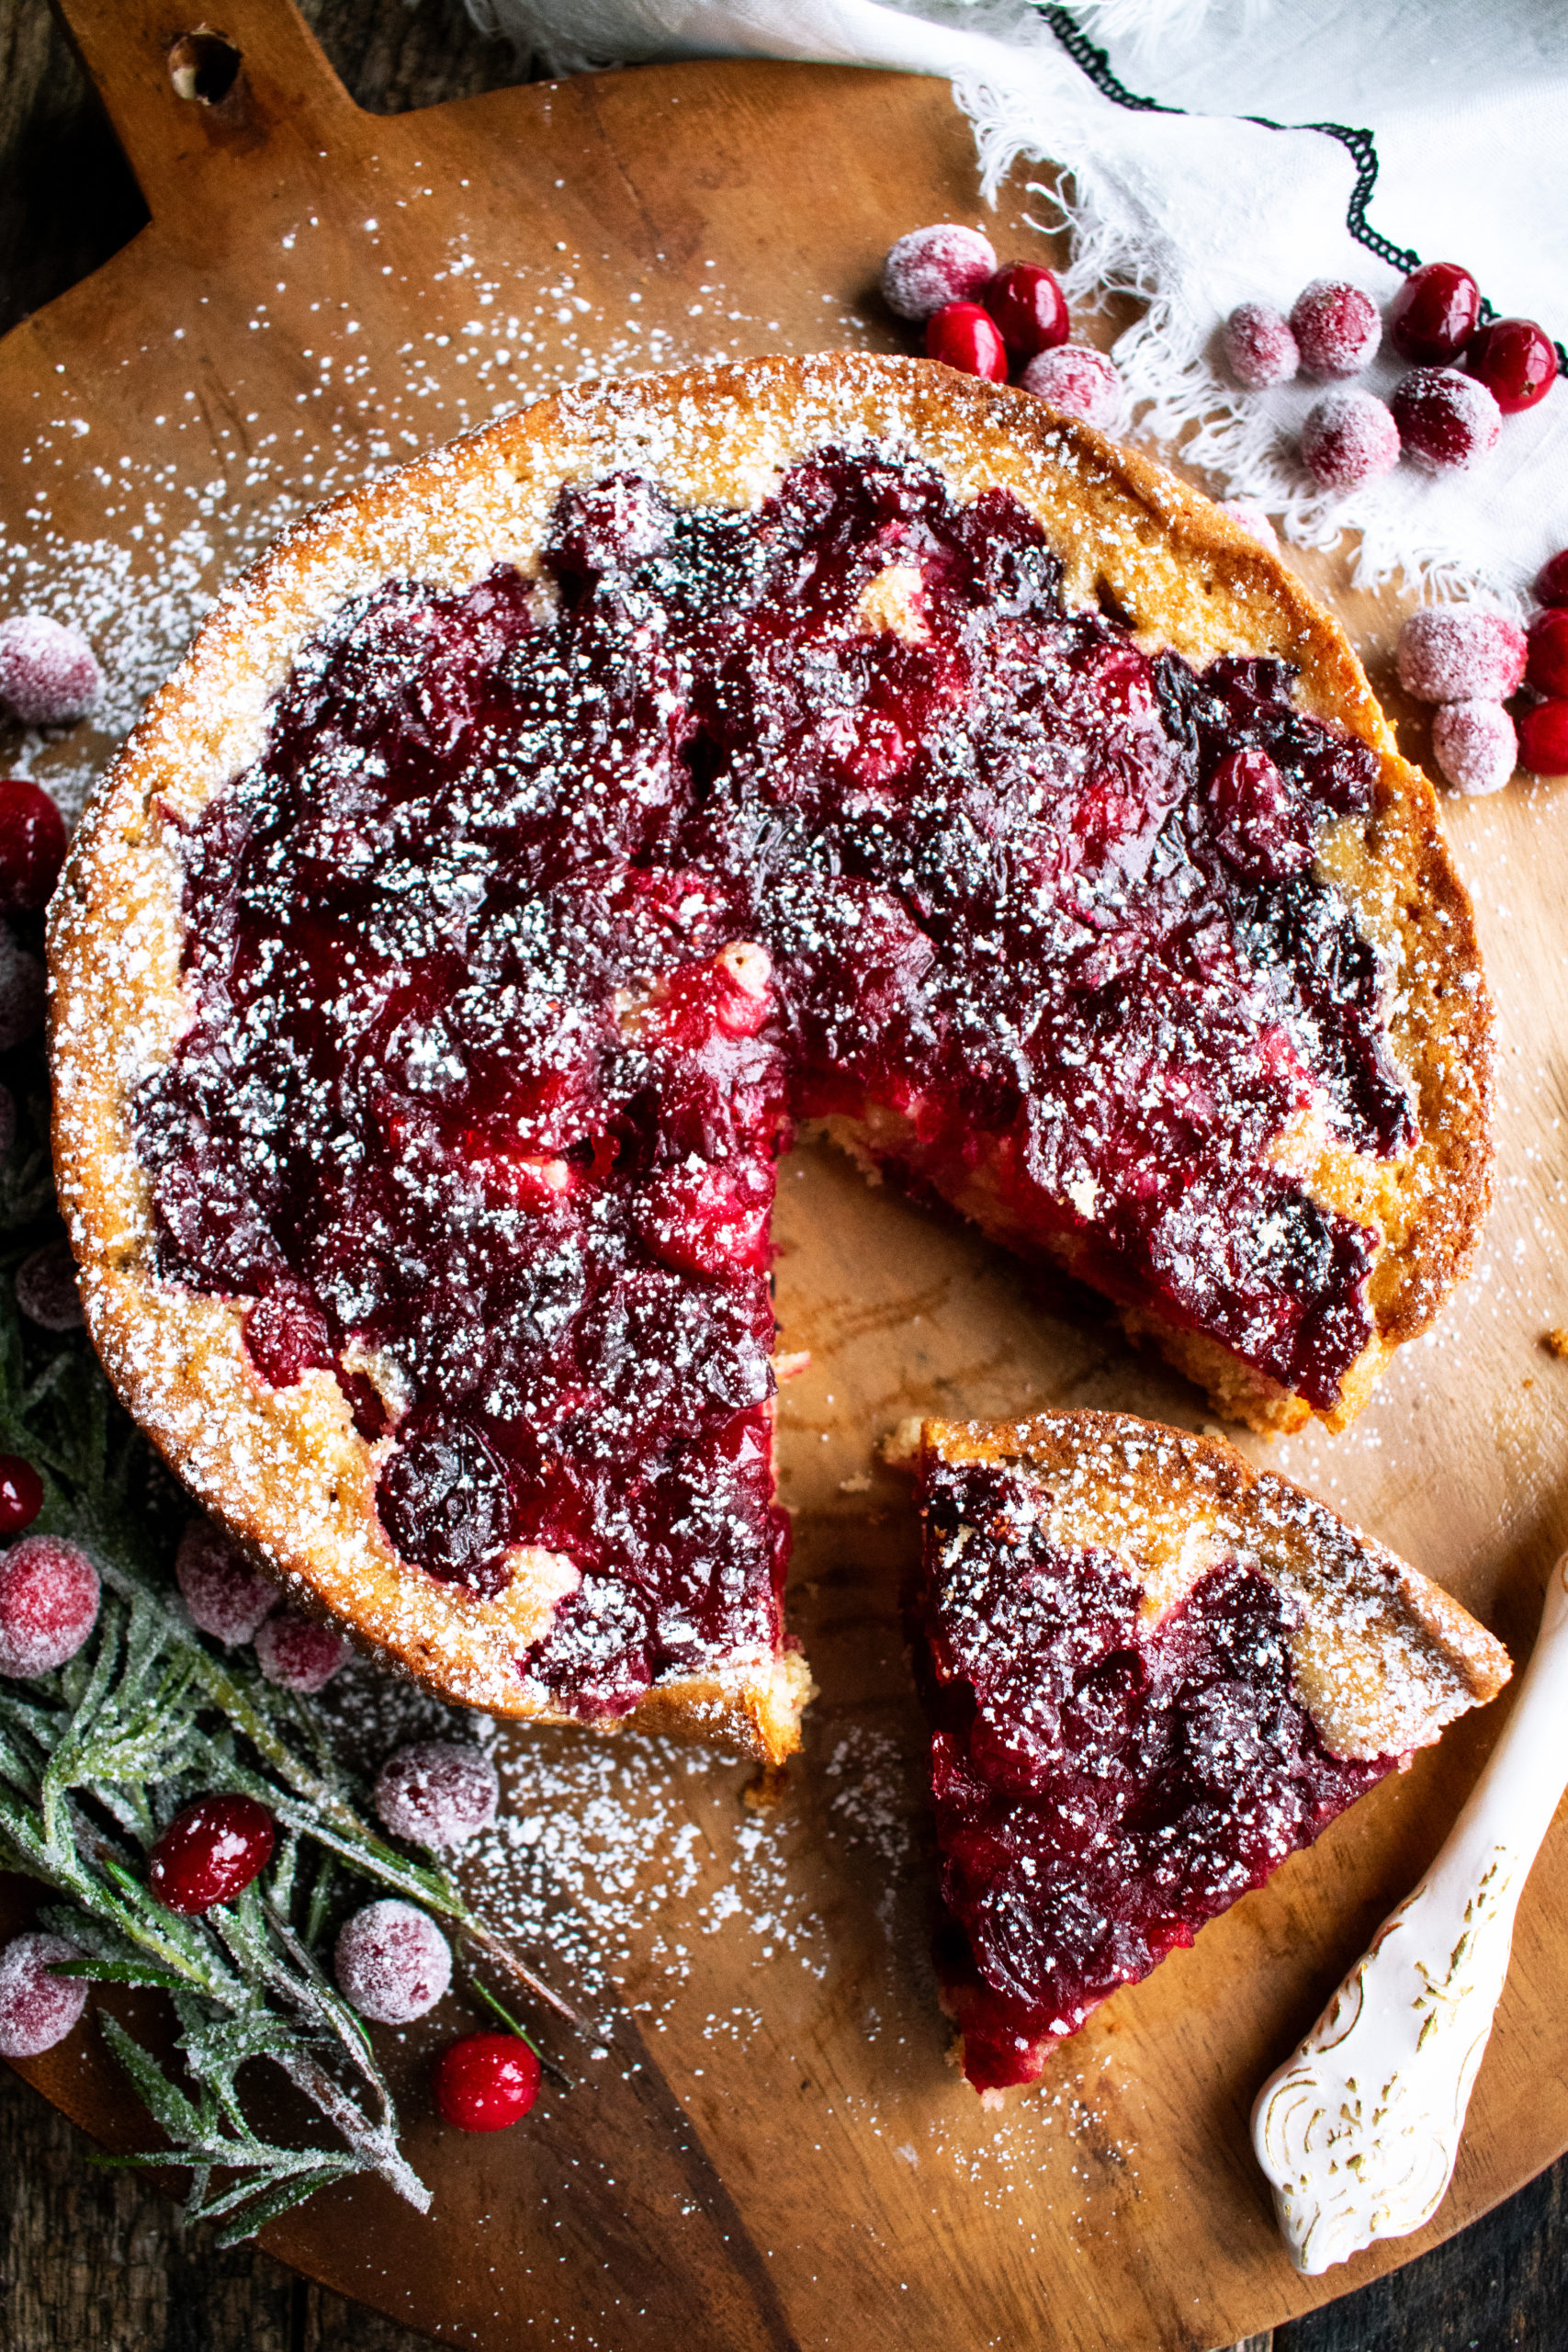 Cranberry baking recipes